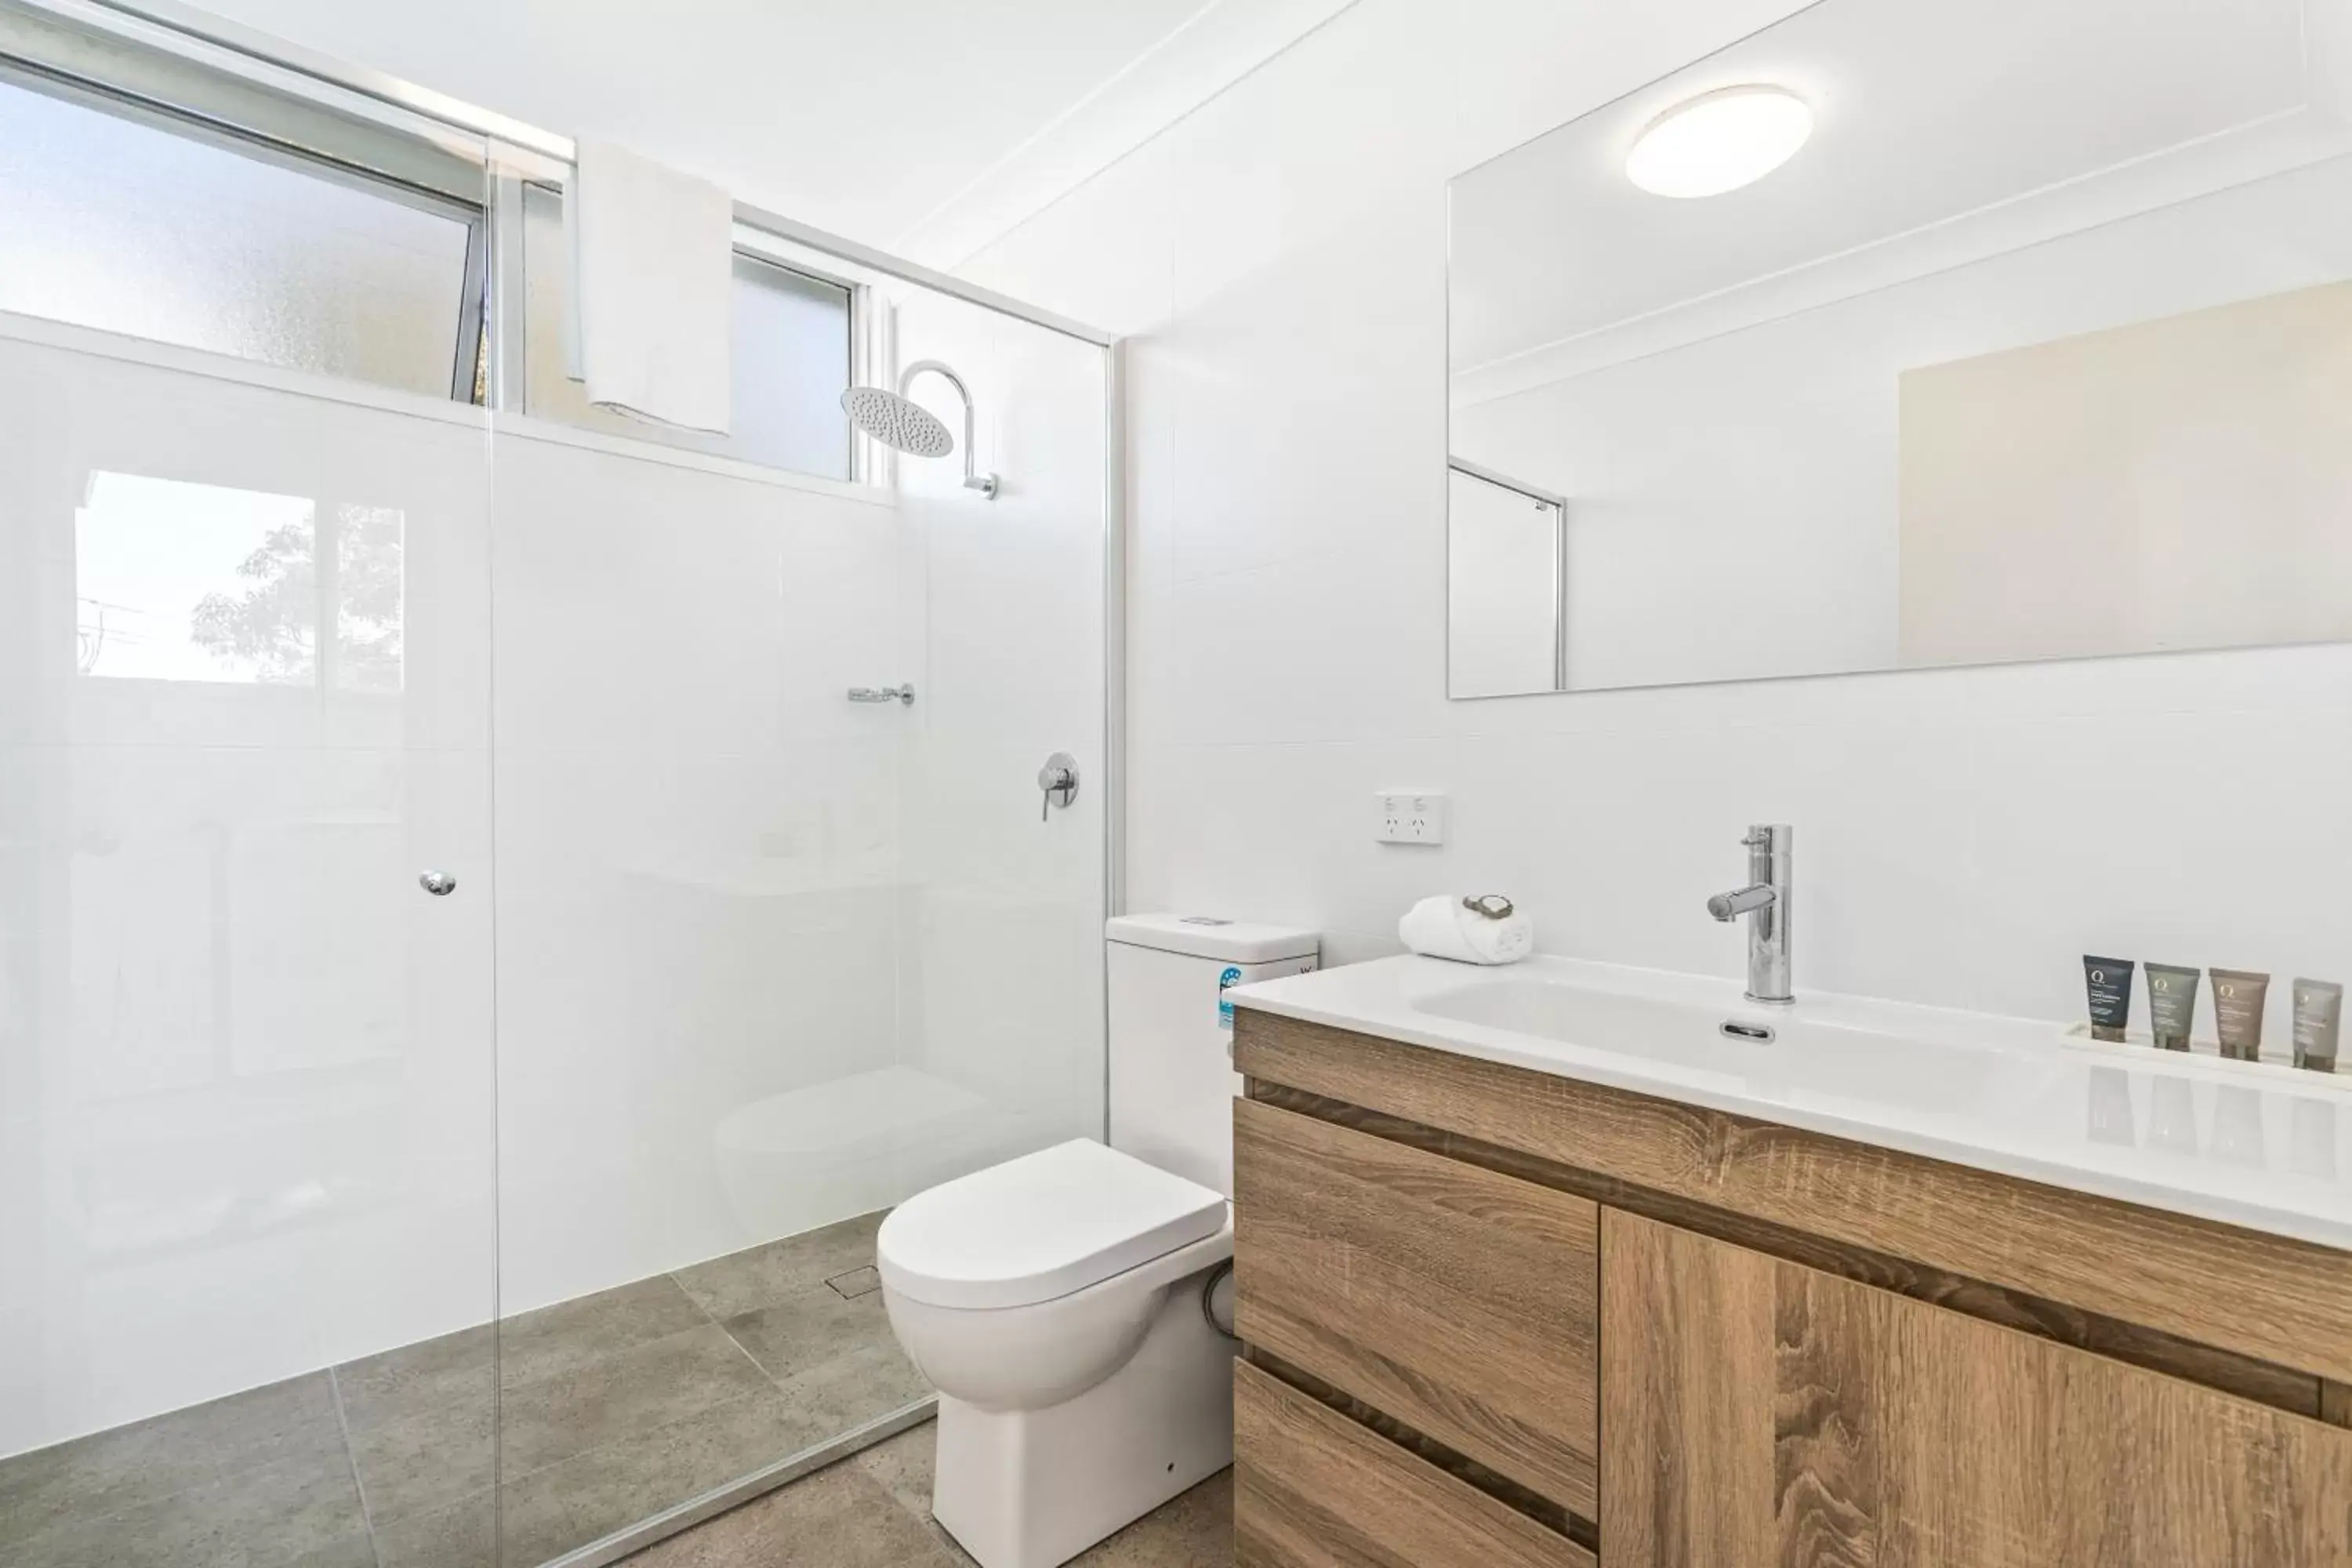 Shower, Bathroom in APX Parramatta